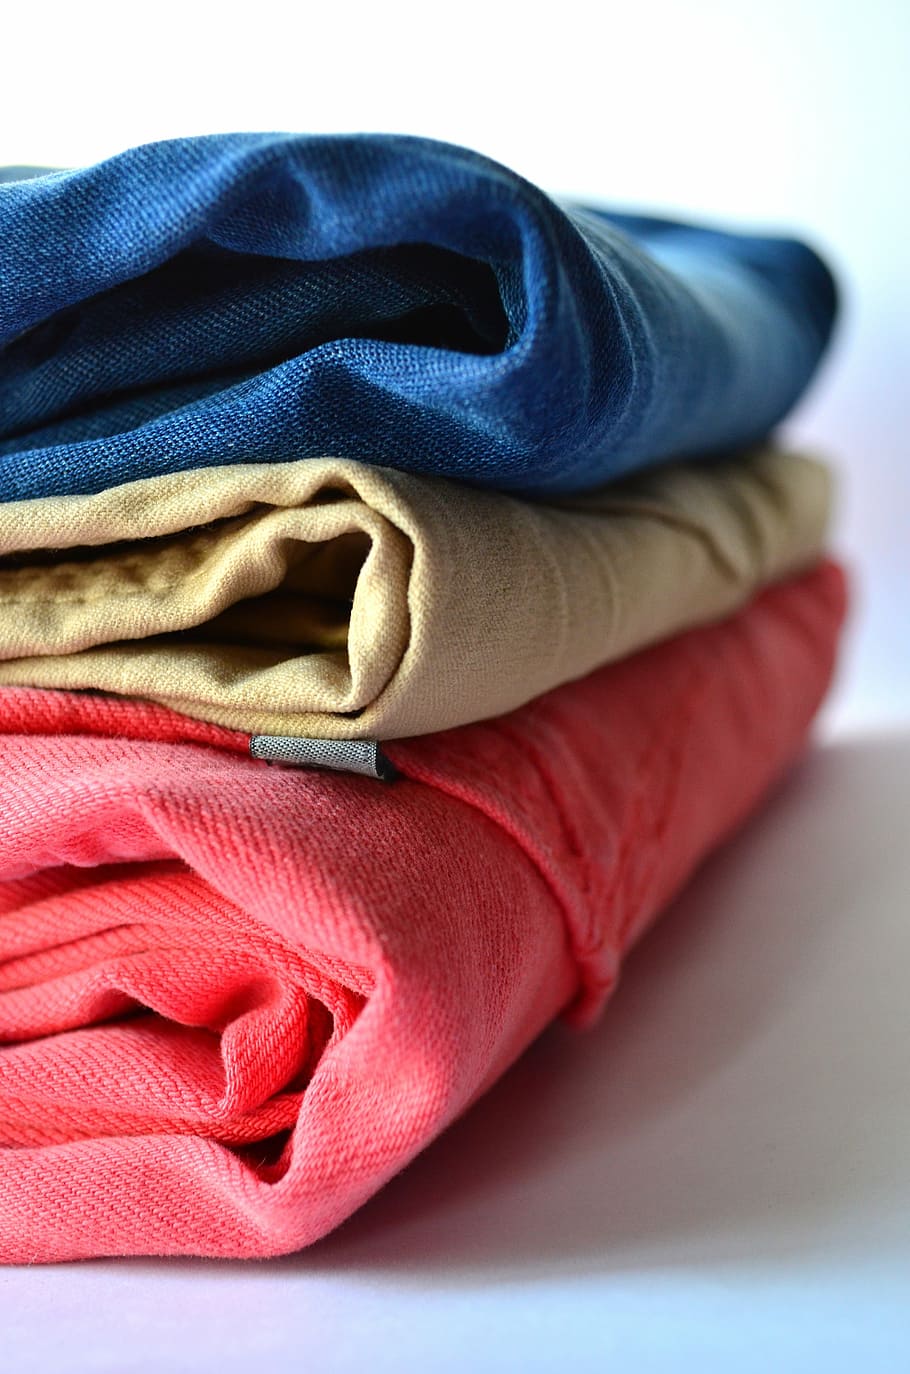 três, jeans, branco, superfície, roupas, calças, pilha, rosa, azul, vestuário